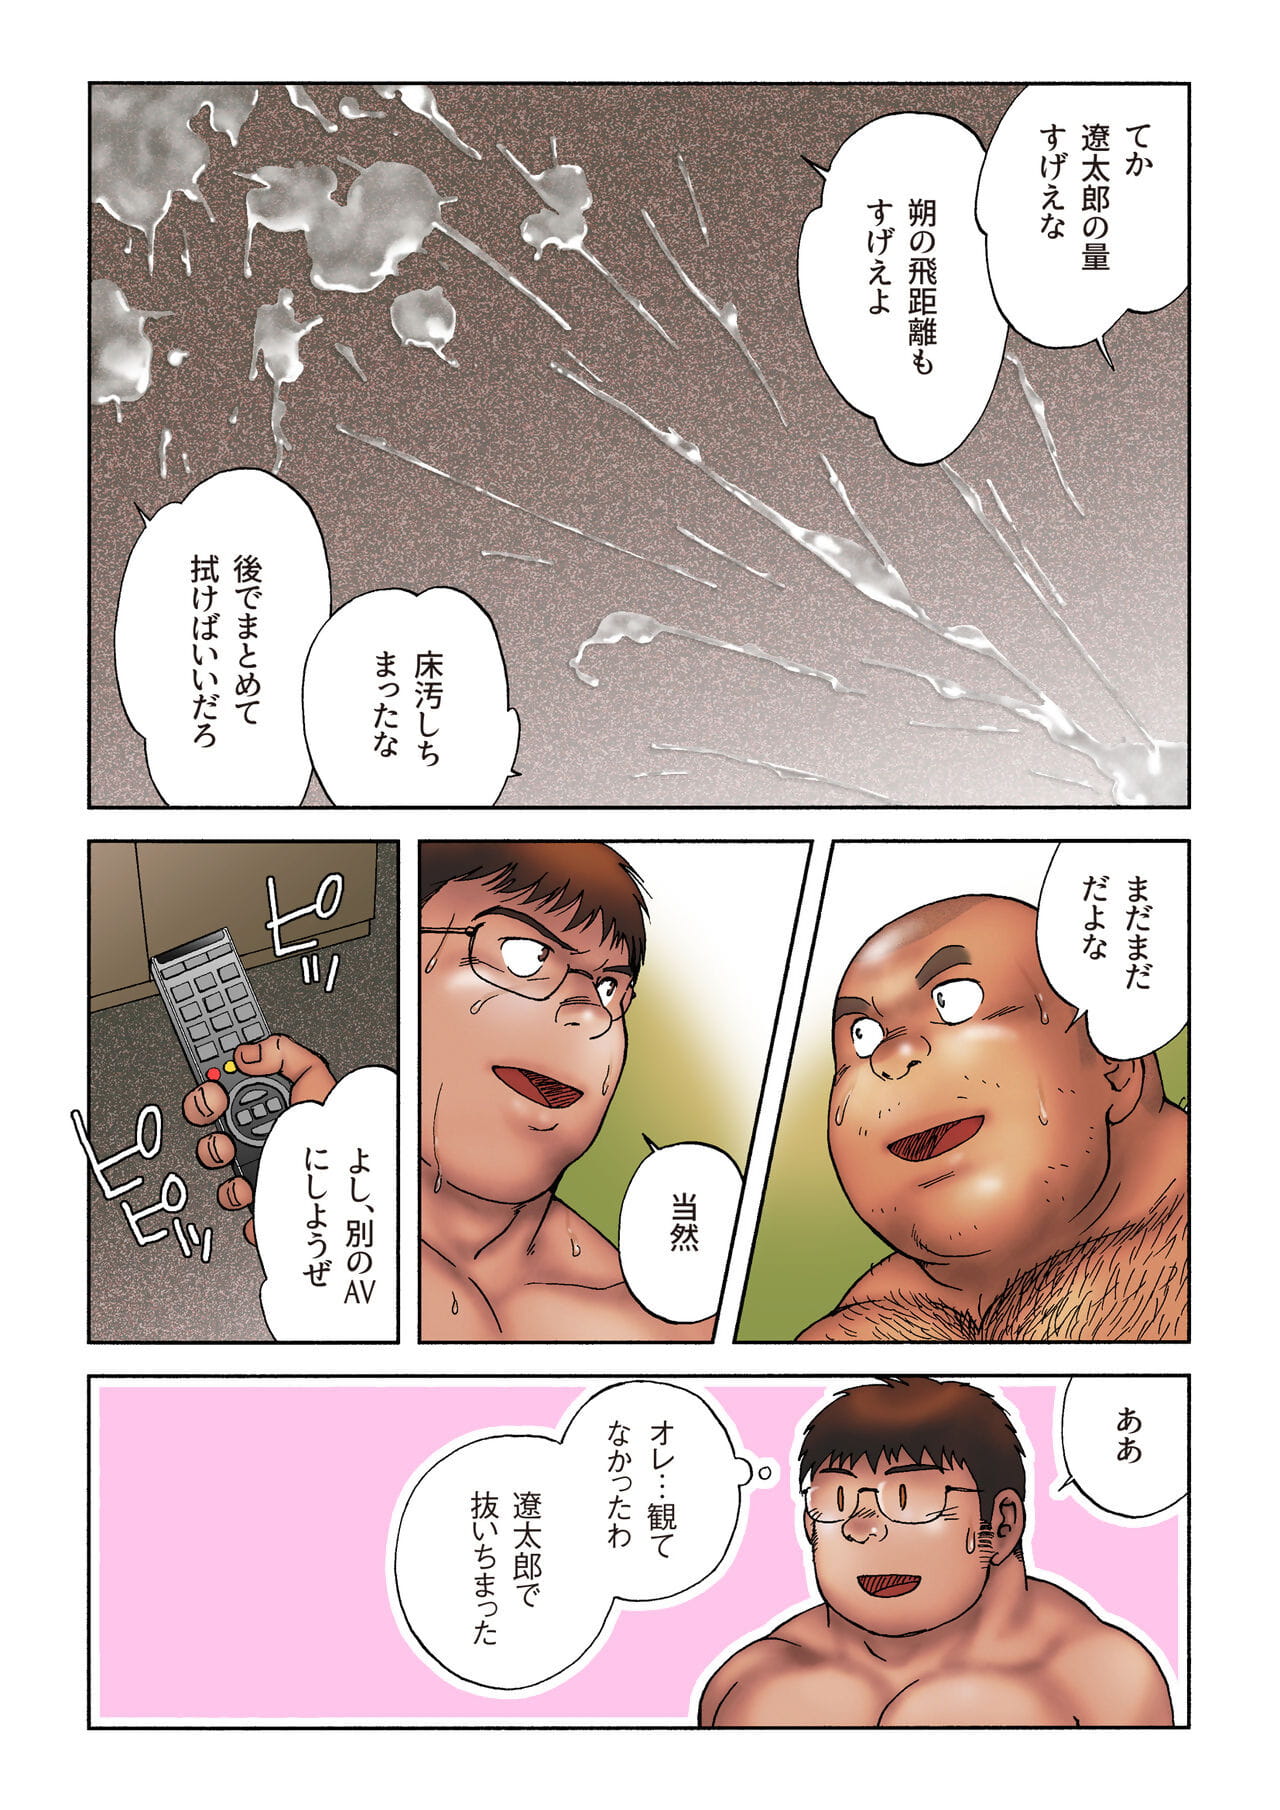 danshi koukousei halterci Taikai Git hayır hotel de hayır Aoi sakin PART 2 page 1